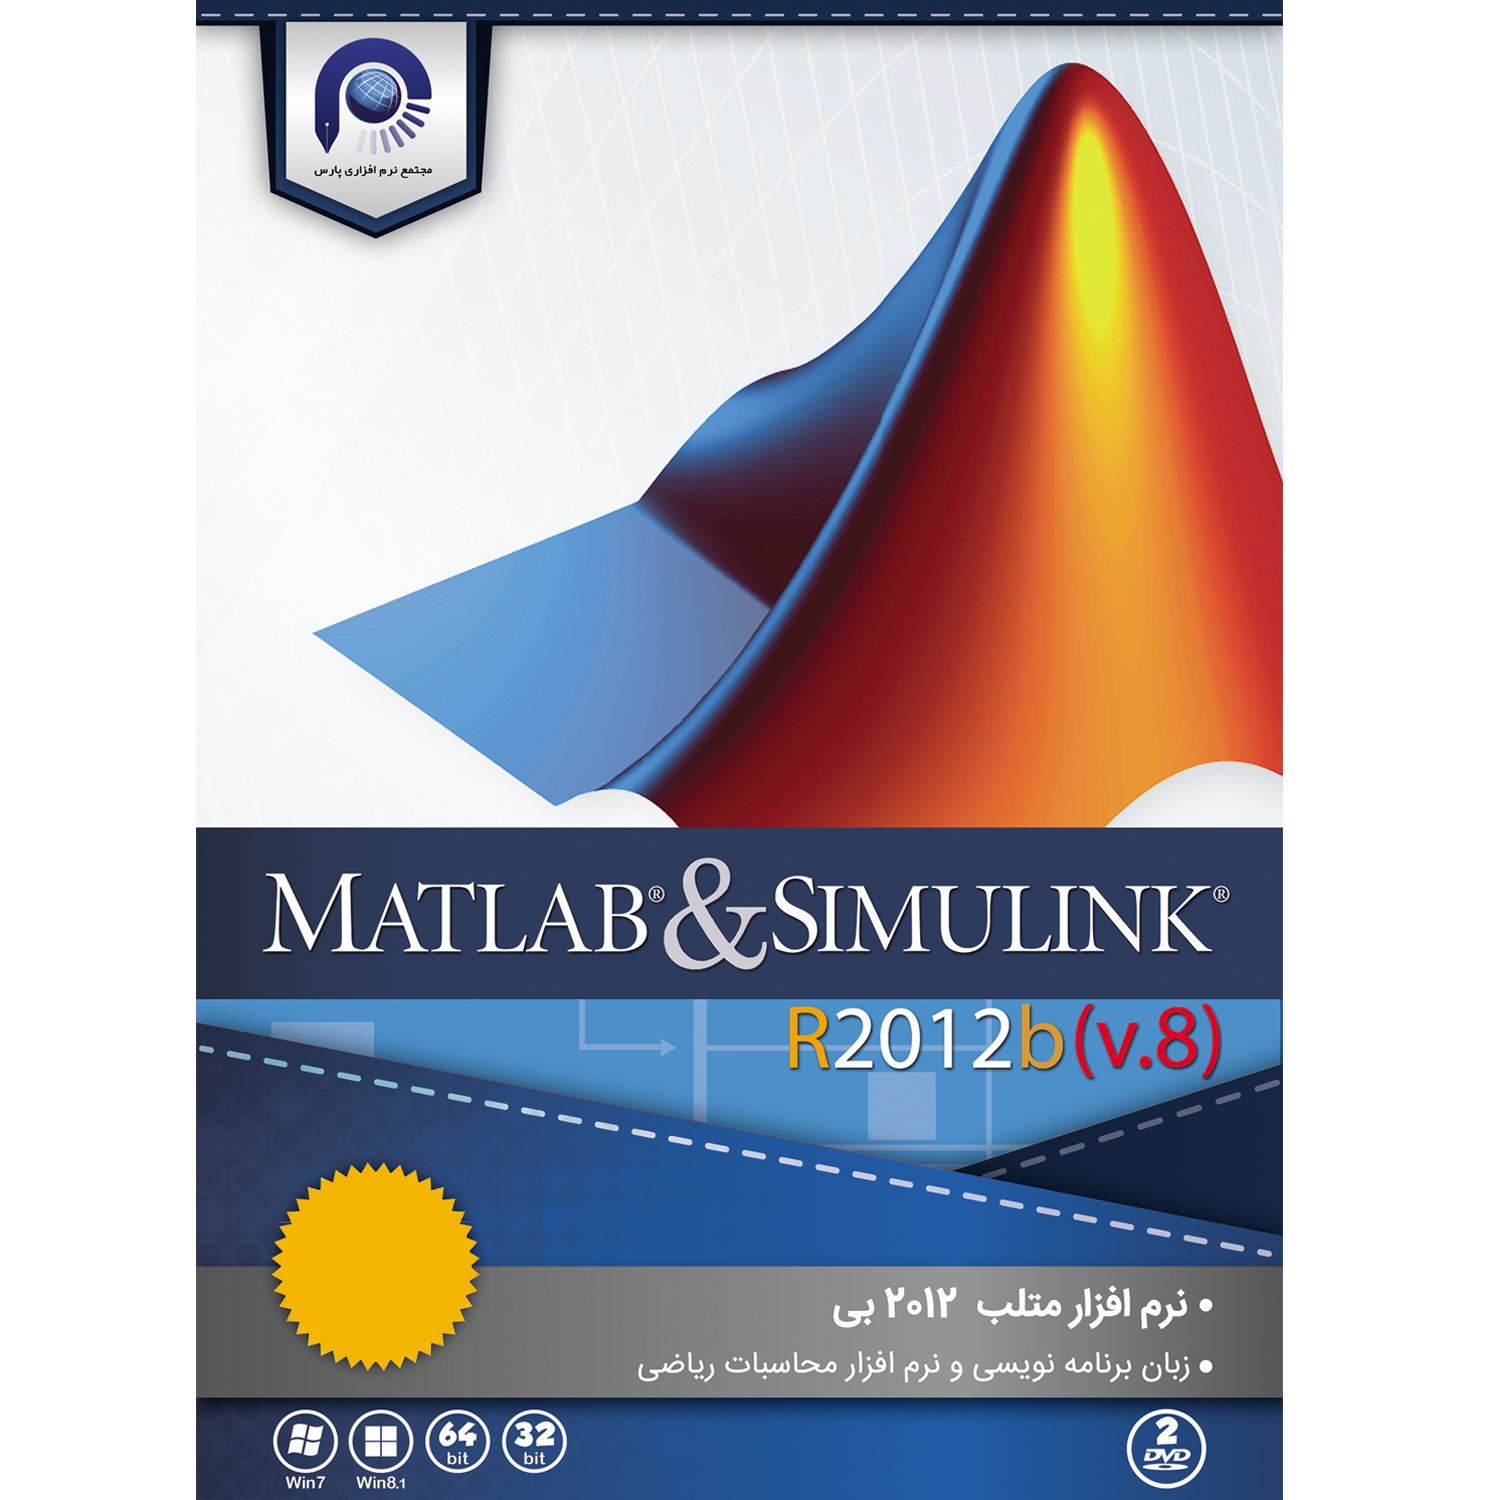  مجموعه نرم افزاری MATLAB & SIMULINK  R2012b نشر مجتمع نرم افزاری پارس